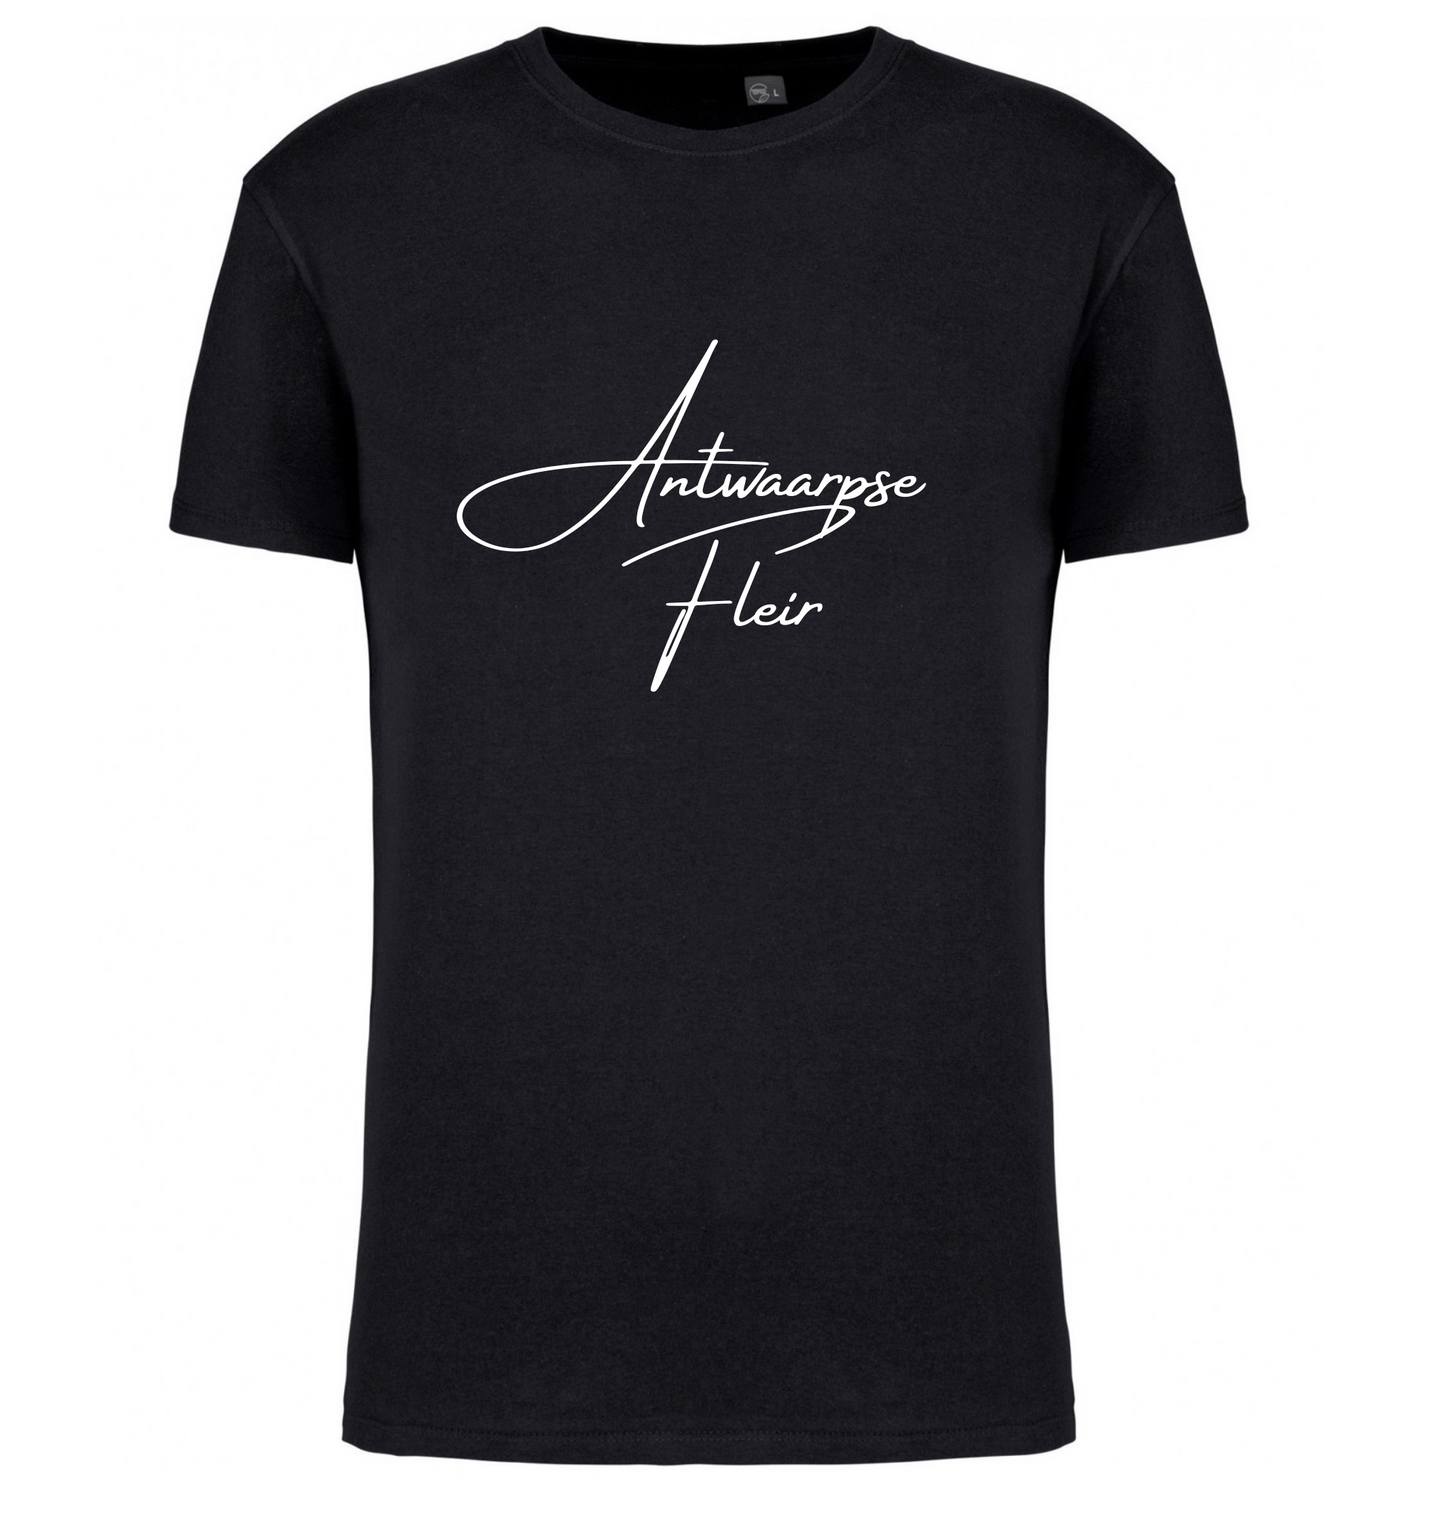 Premium T-shirt Antwaarpse Fleir - 100% Biokatoen Unisex